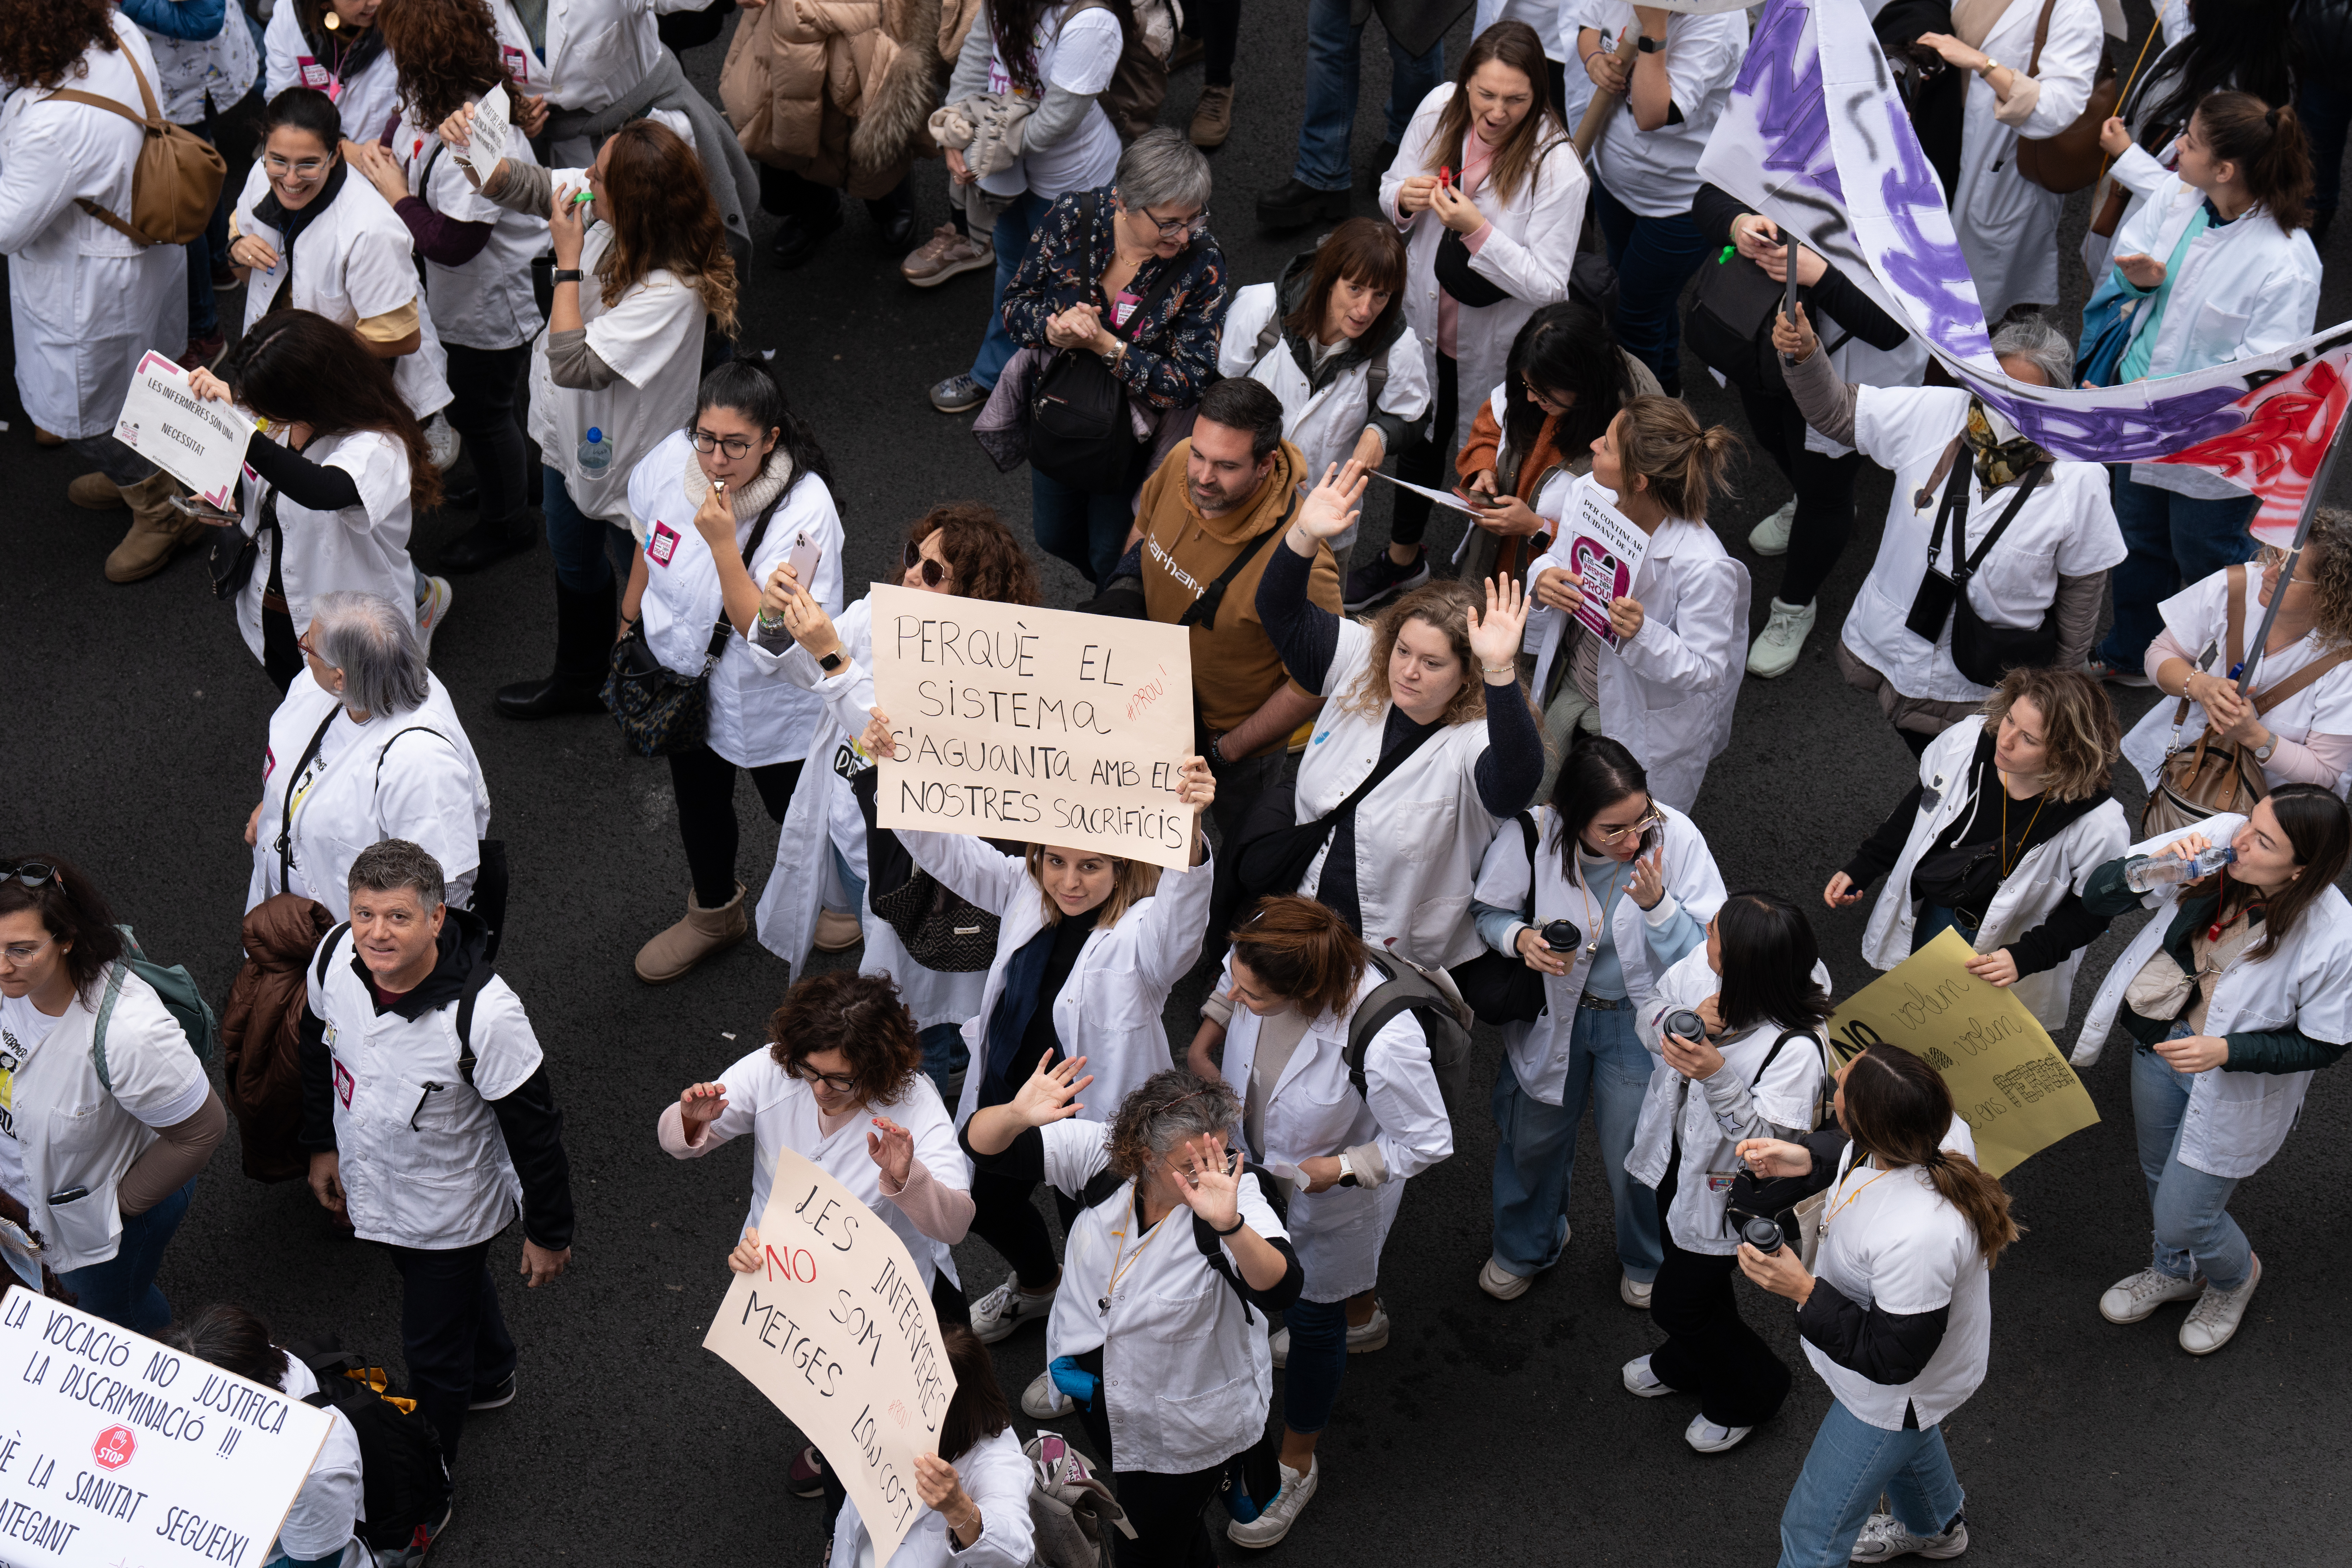 Els tècnics sanitaris segueixen el camí de les infermeres i anuncien una vaga indefinida